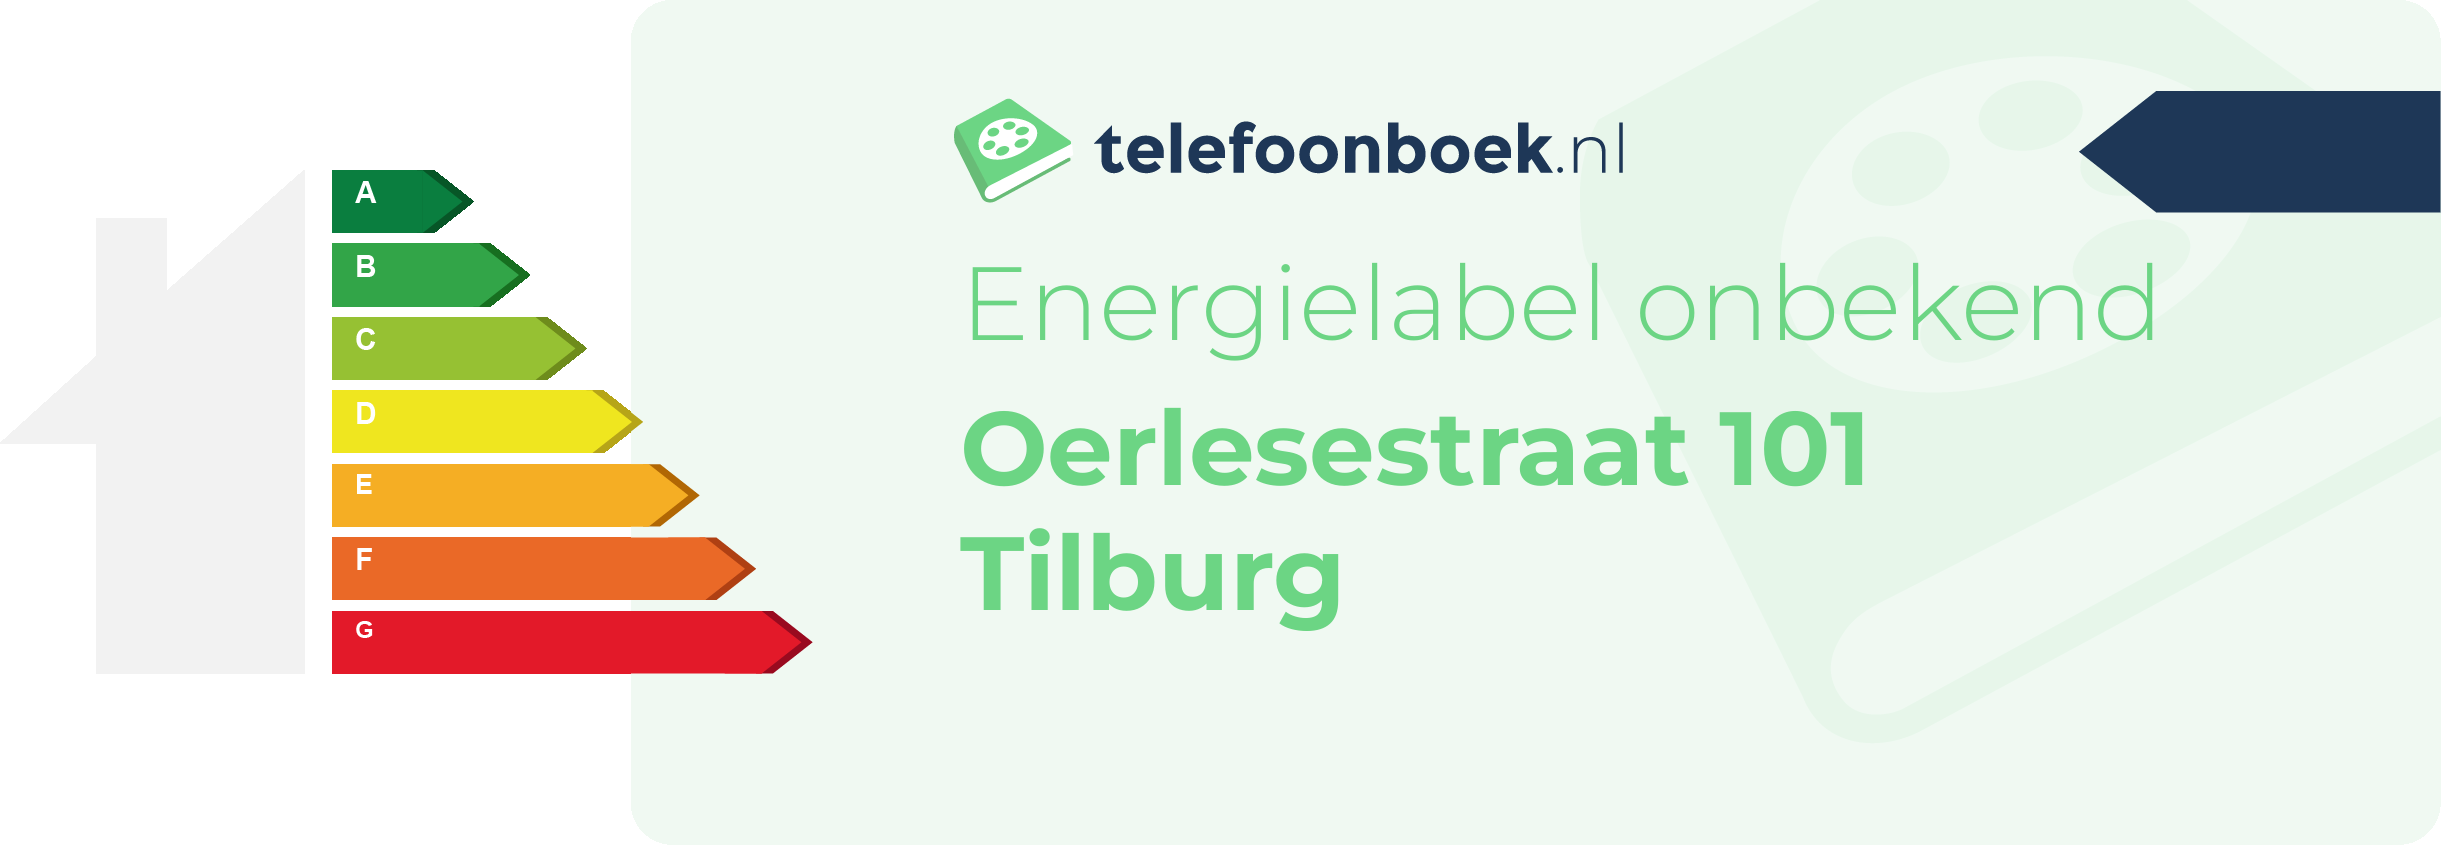 Energielabel Oerlesestraat 101 Tilburg